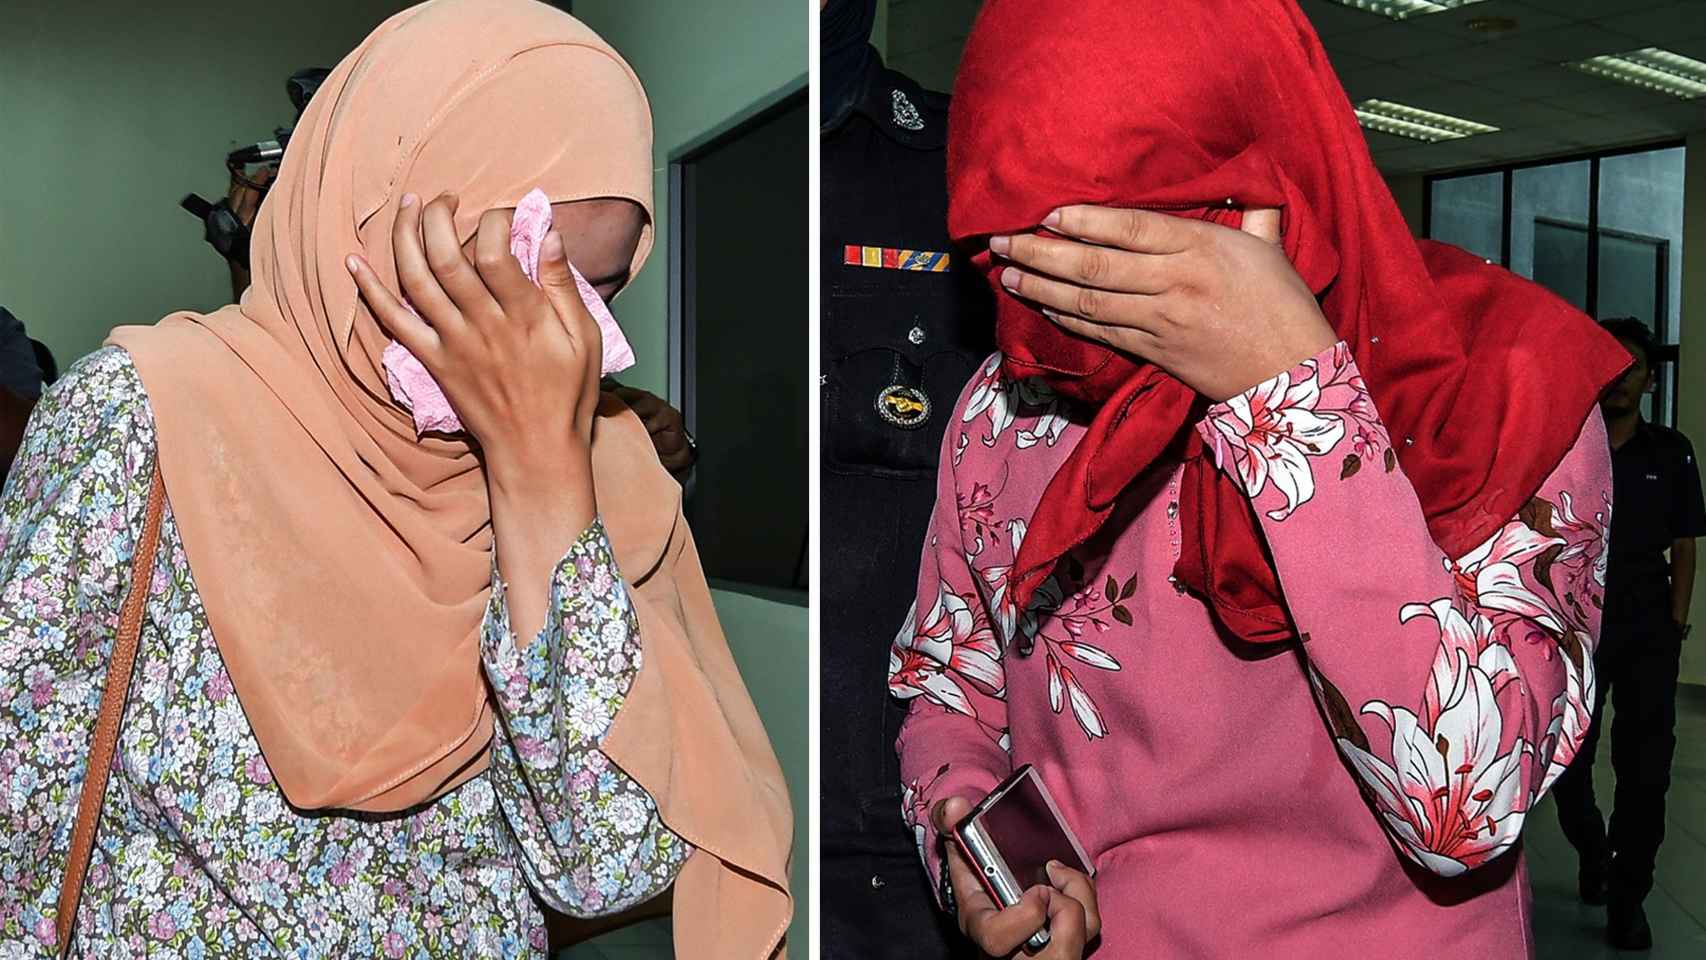 Las dos mujeres malasias que han recibido seis azotes.